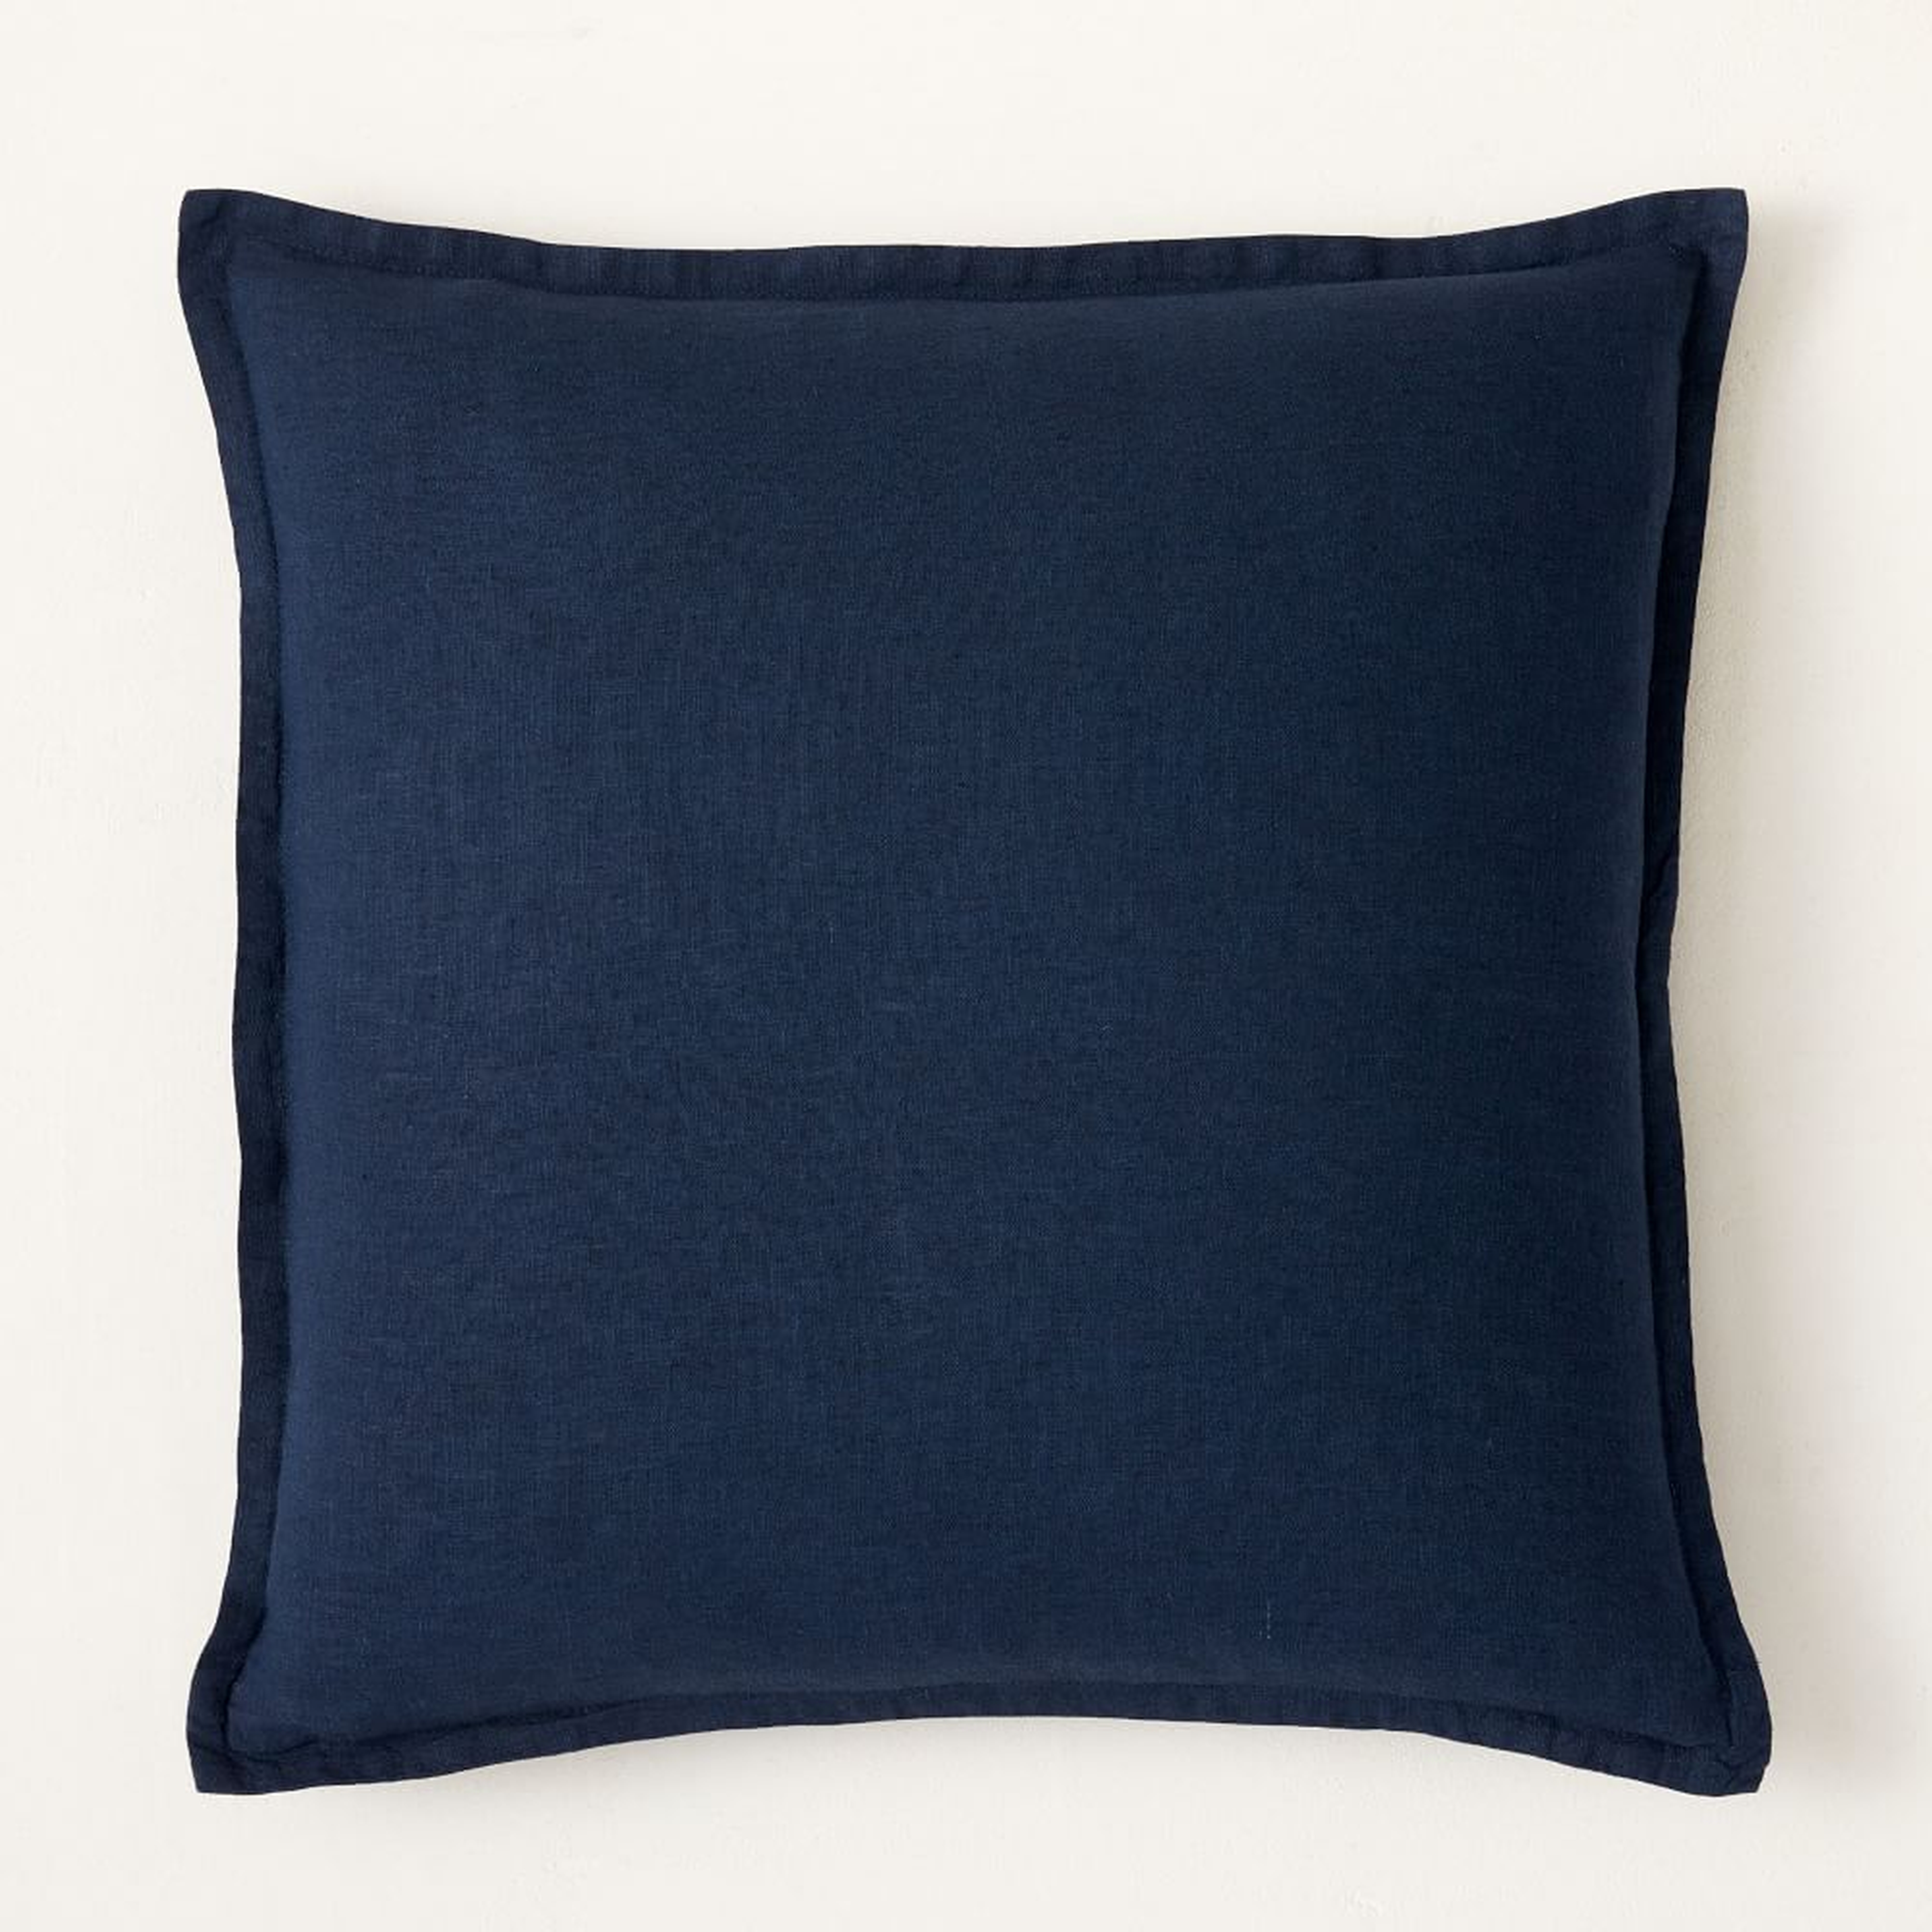 European Flax Linen Pillow Cover, 20"x20", Midnight - West Elm